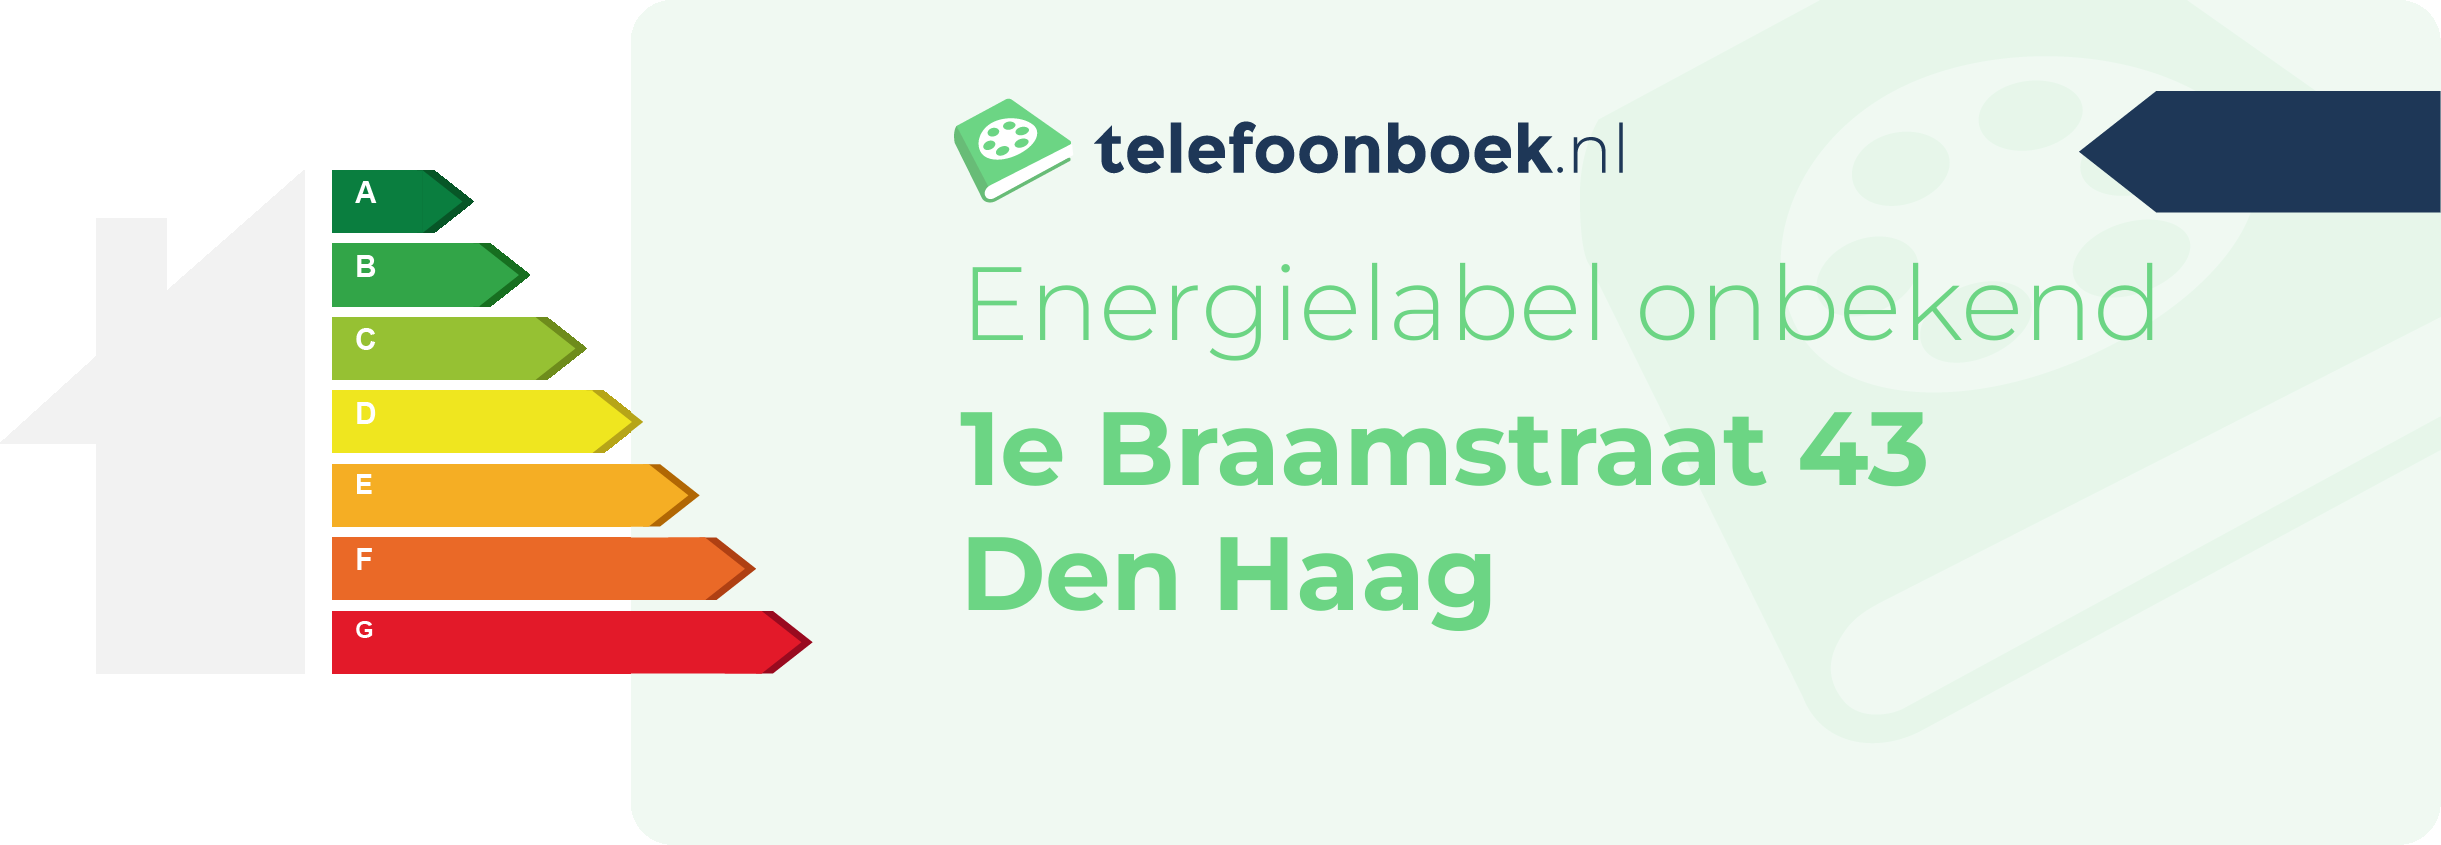 Energielabel 1e Braamstraat 43 Den Haag